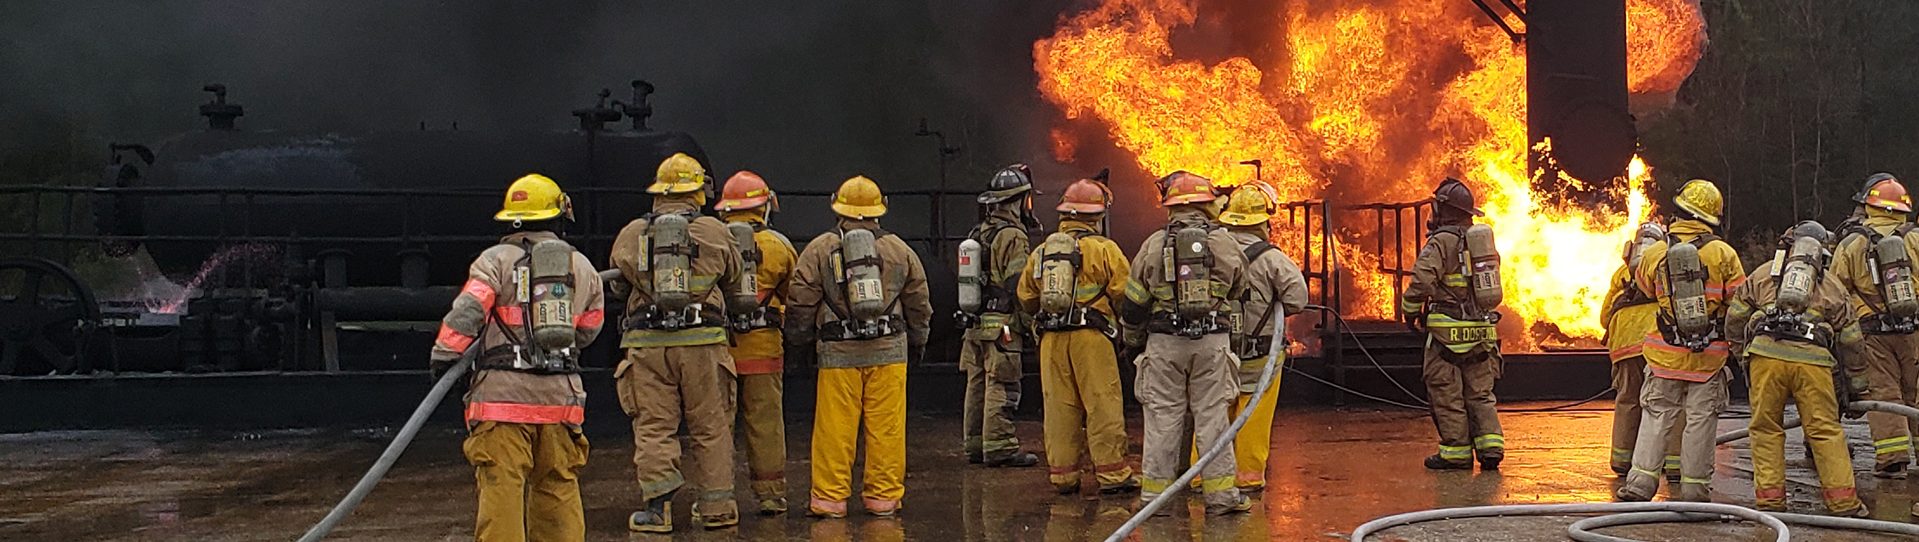 Firefighters fight industrial blaze outside